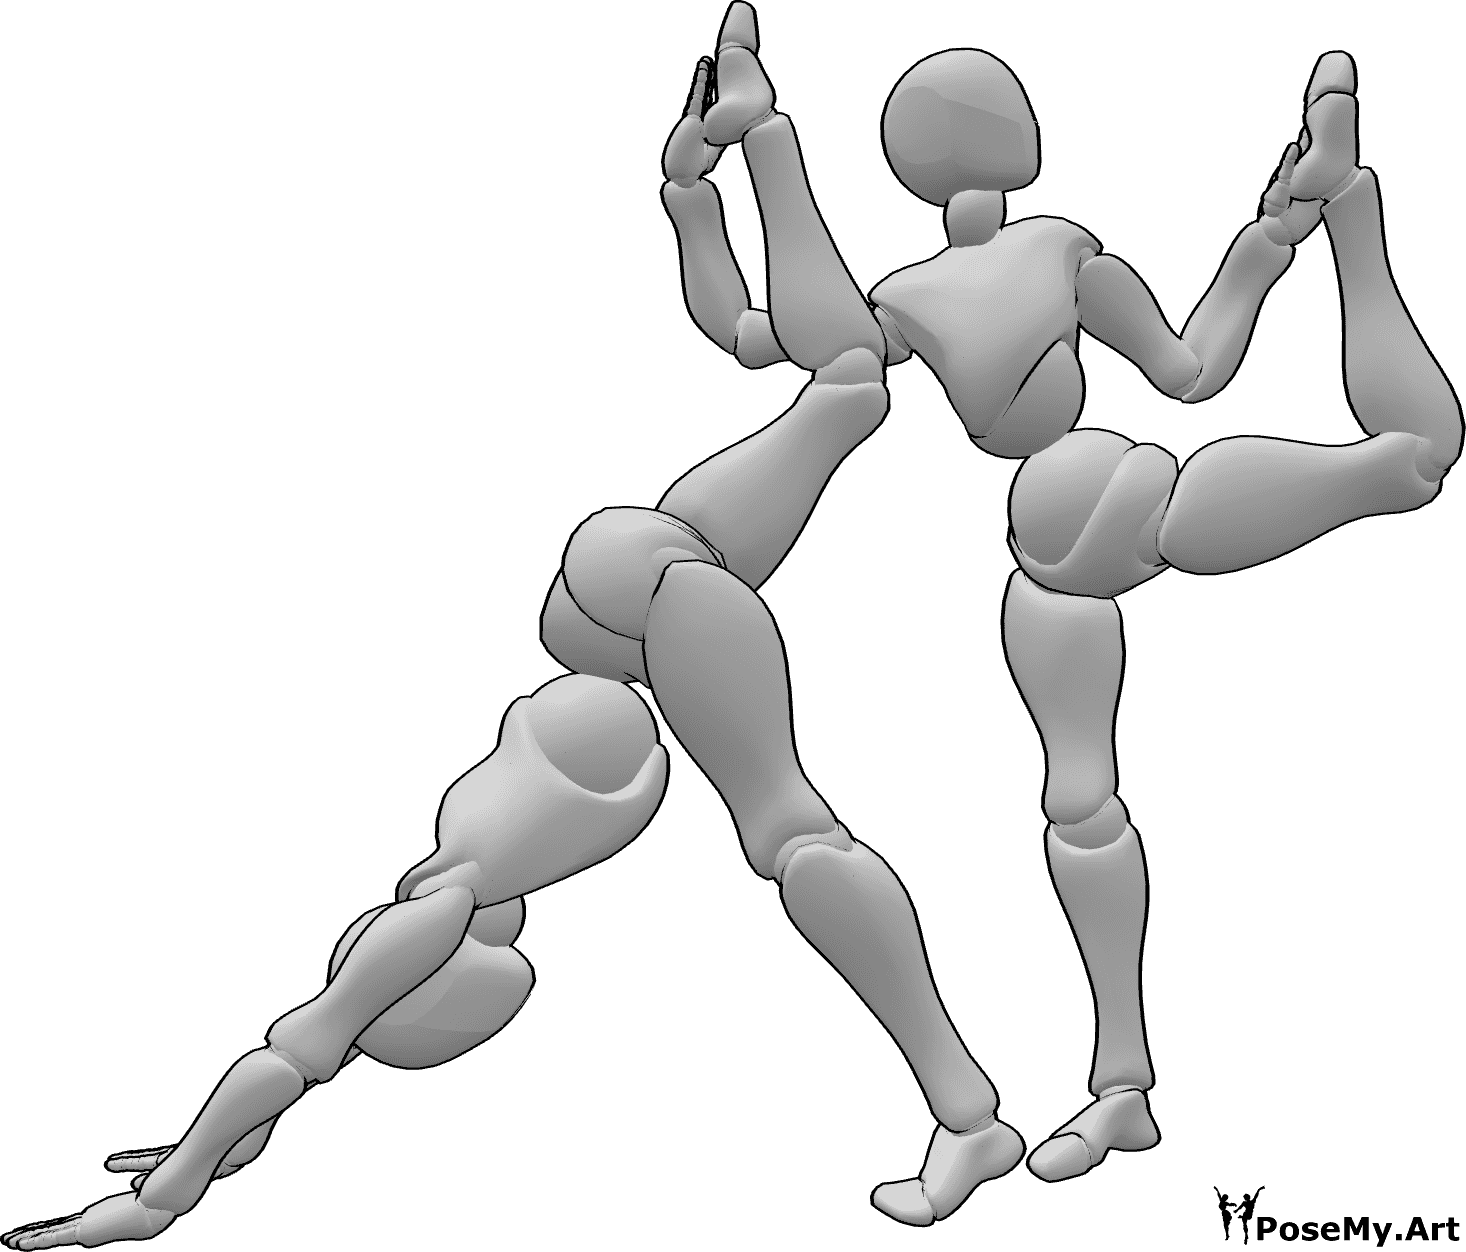 Référence des poses- Pose de gymnastique en duo - Les femmes font de la gymnastique ensemble pose